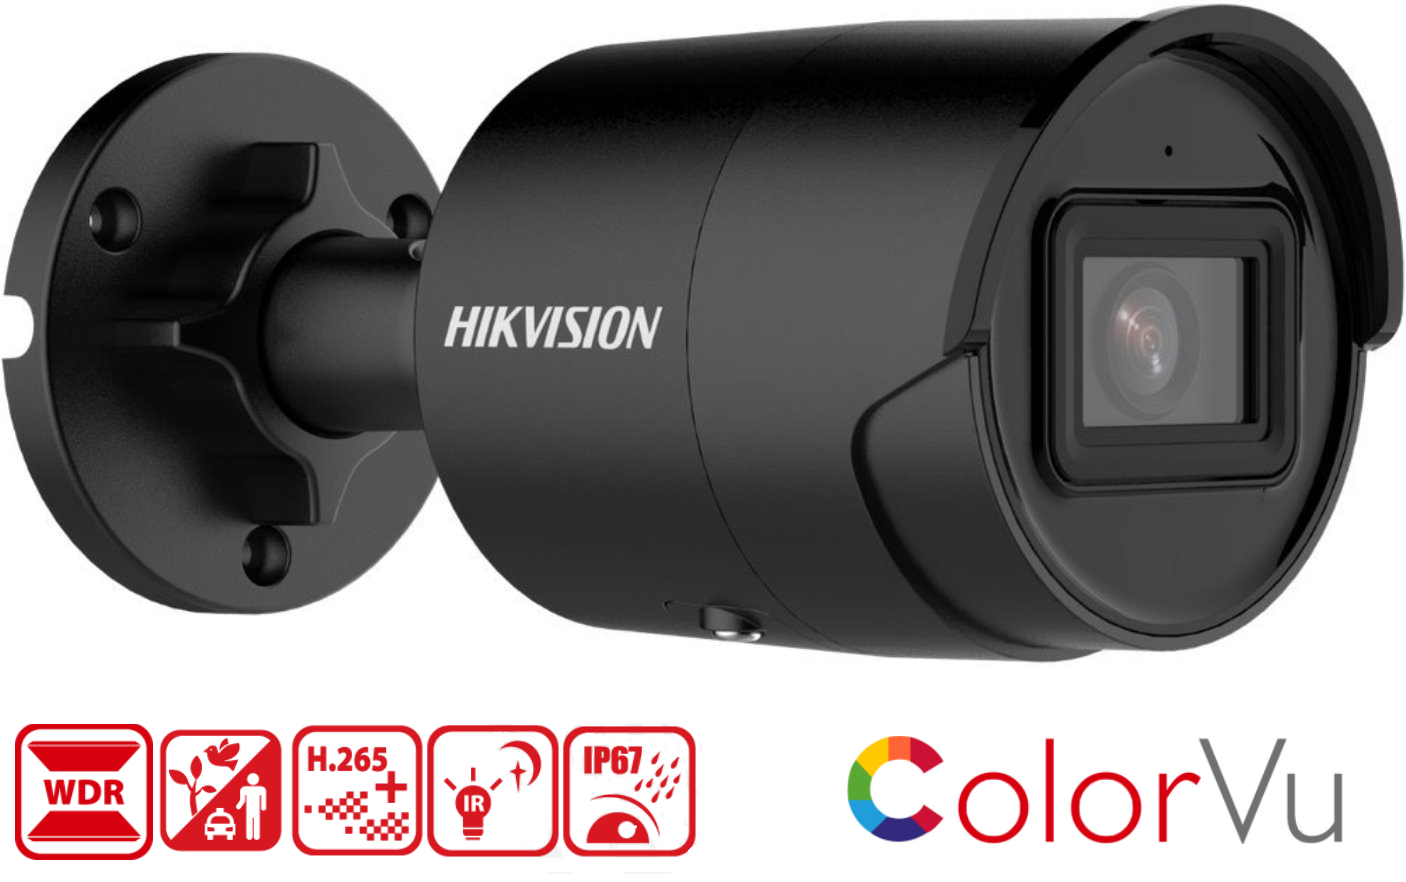 Kamera Hikvision  DS-2CD2046G2-IU má rozlišení 2688 x 1520px při 25 fps, krytí IP67, 120dB WDR snímač DarkFighter, micro SD slot na 256GB kartu, podporu kodeku H.265, barevné noční vidění ColorVu a algoritmus hlubokého učení AcuSense 2.0 pro chytrou detekci pohybu.